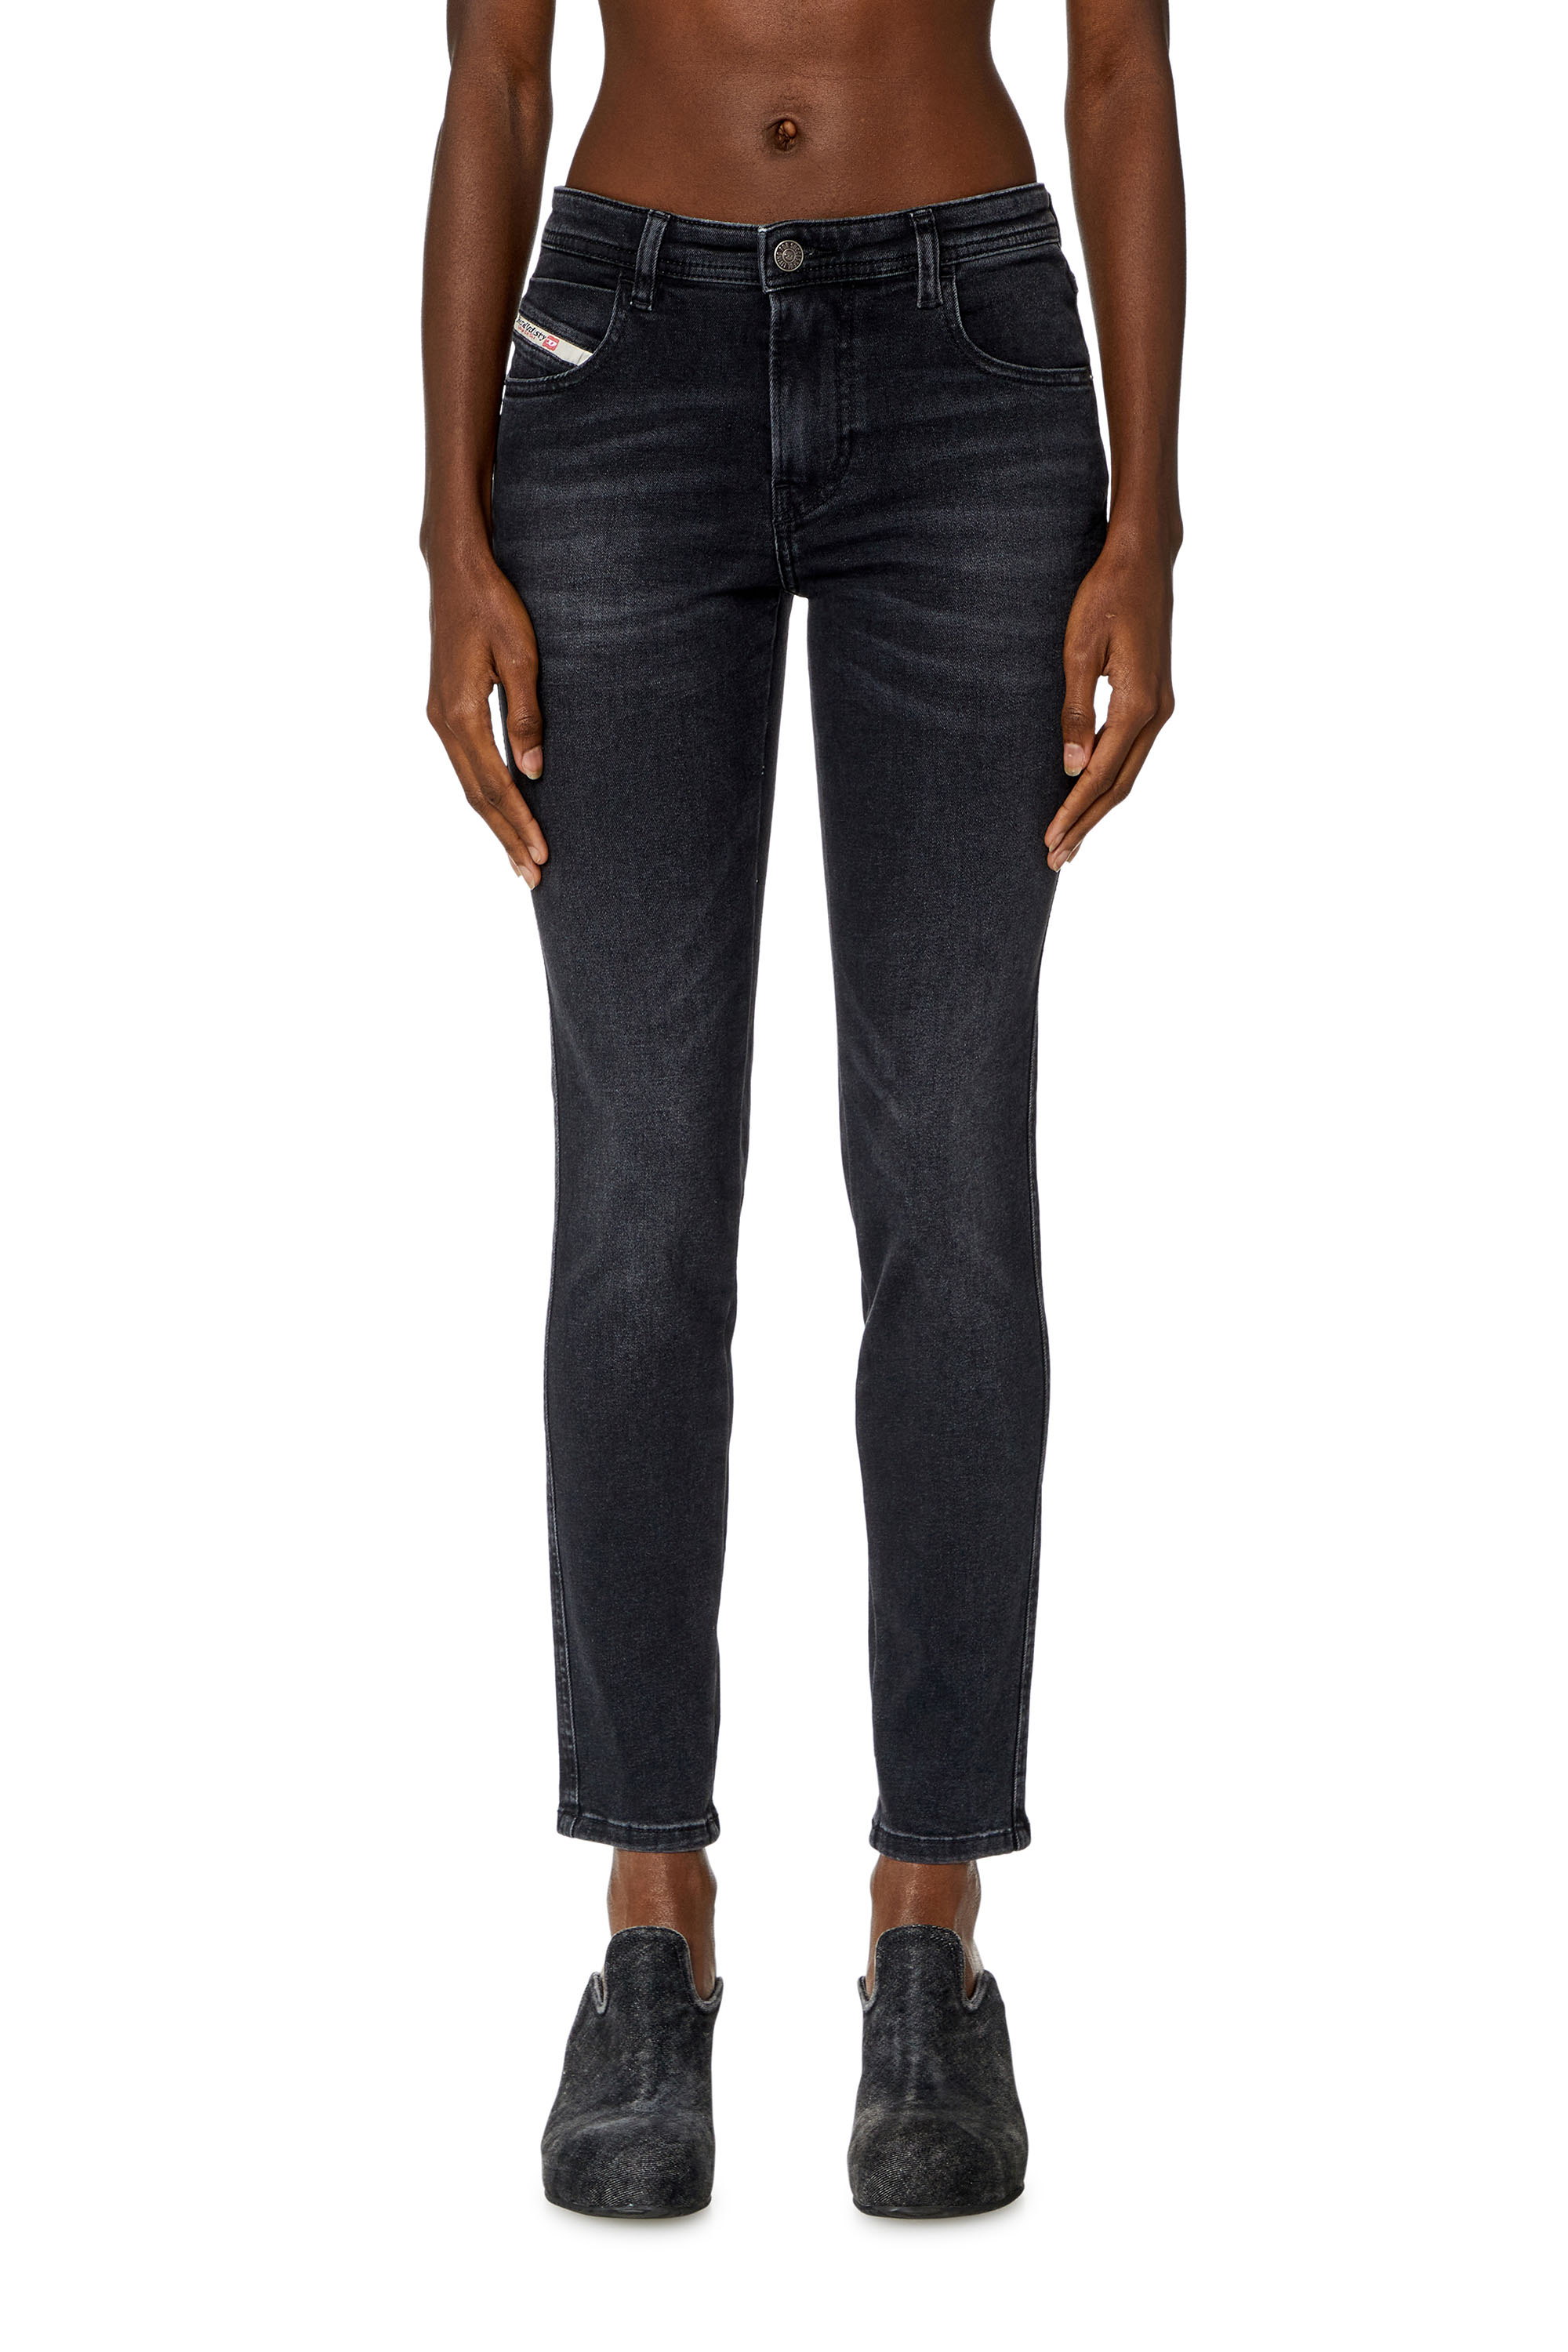 Diesel - Skinny Jeans 2015 Babhila 0PFAS, Noir/Gris foncé - Image 2